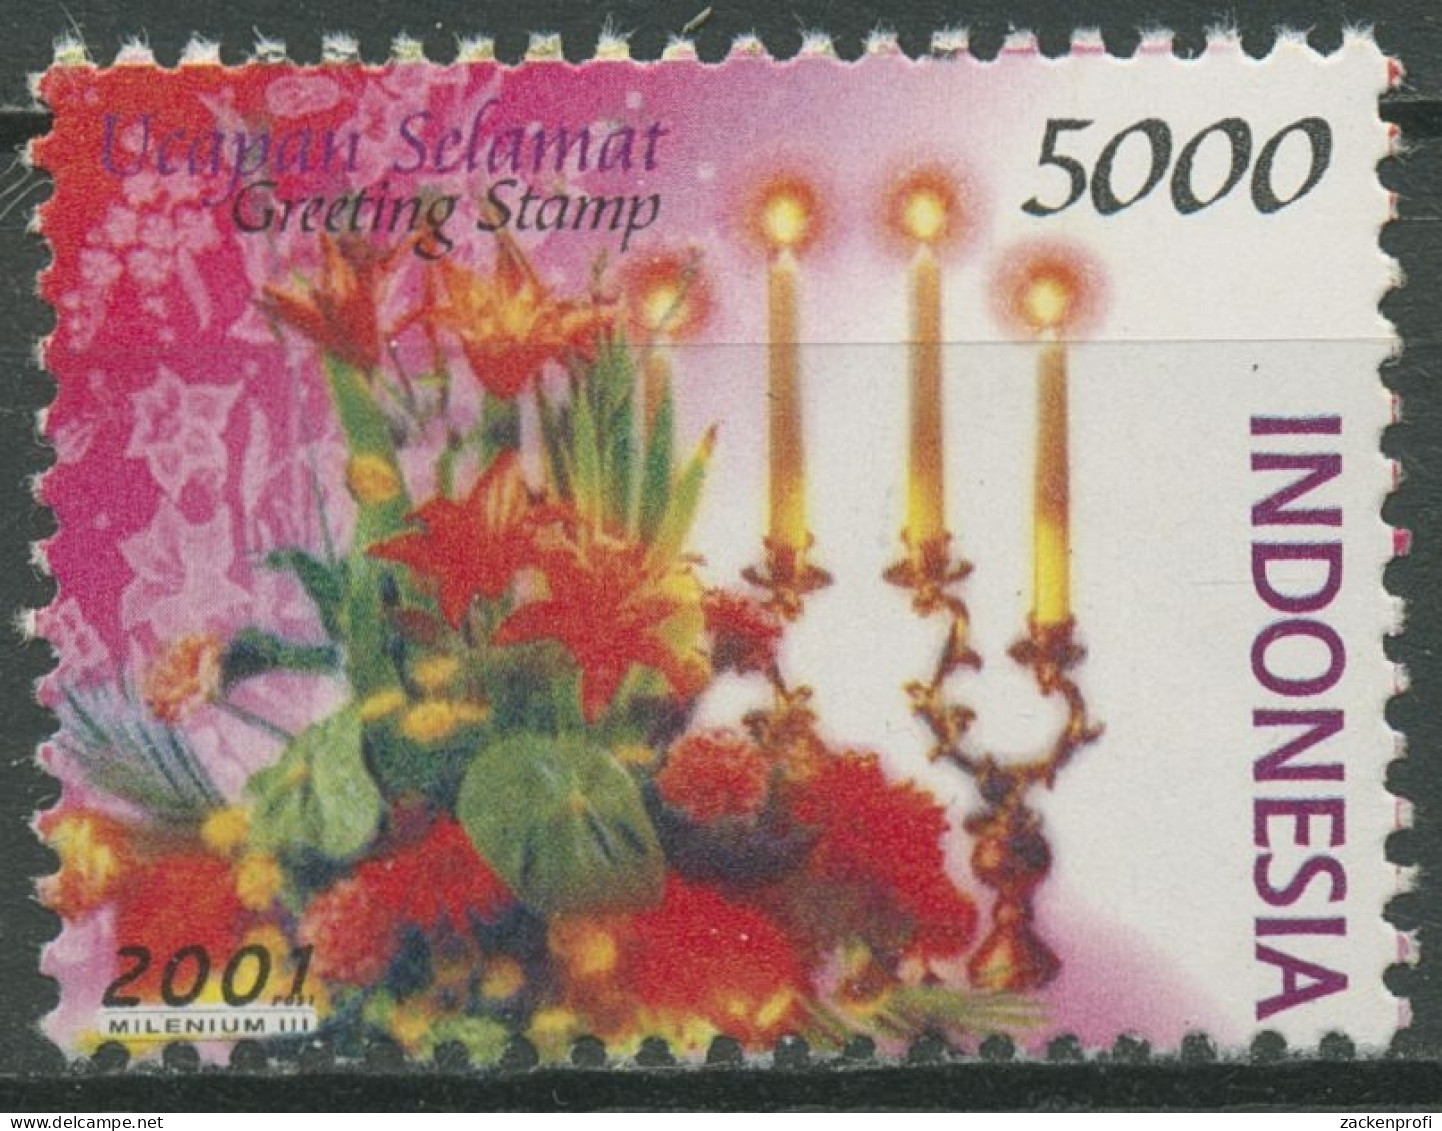 Indonesien 2001 Grußmarken Blumen Blumenbouquet Mit Kerzen 2107 Postfrisch - Indonesia